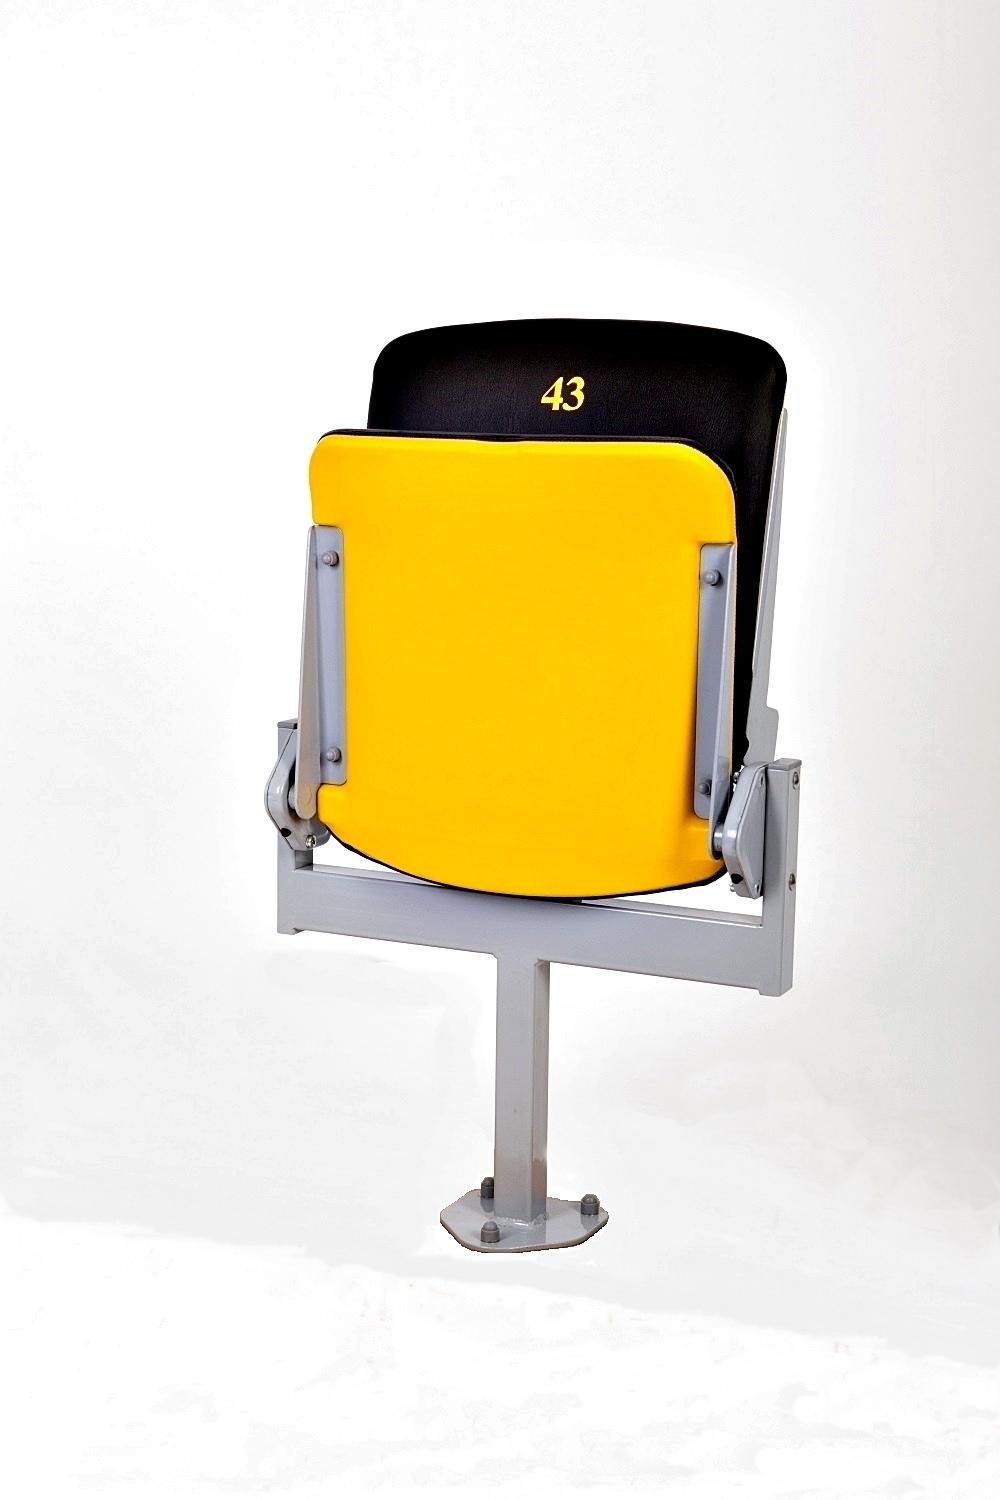 Składane krzesełka stadionowe VIP prostar poznań